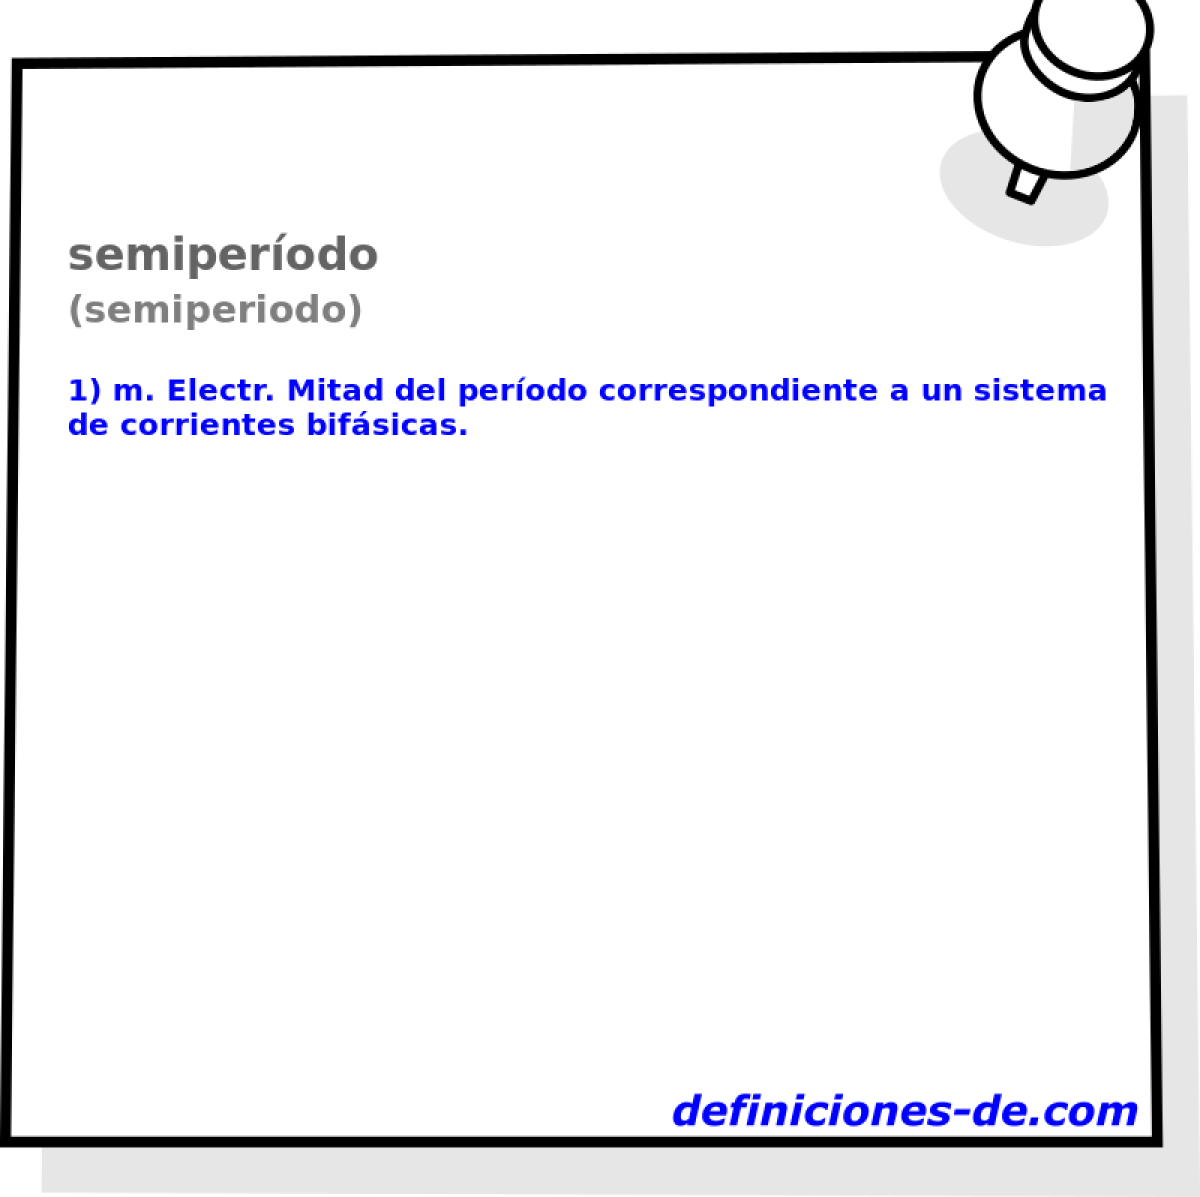 semiperodo (semiperiodo)